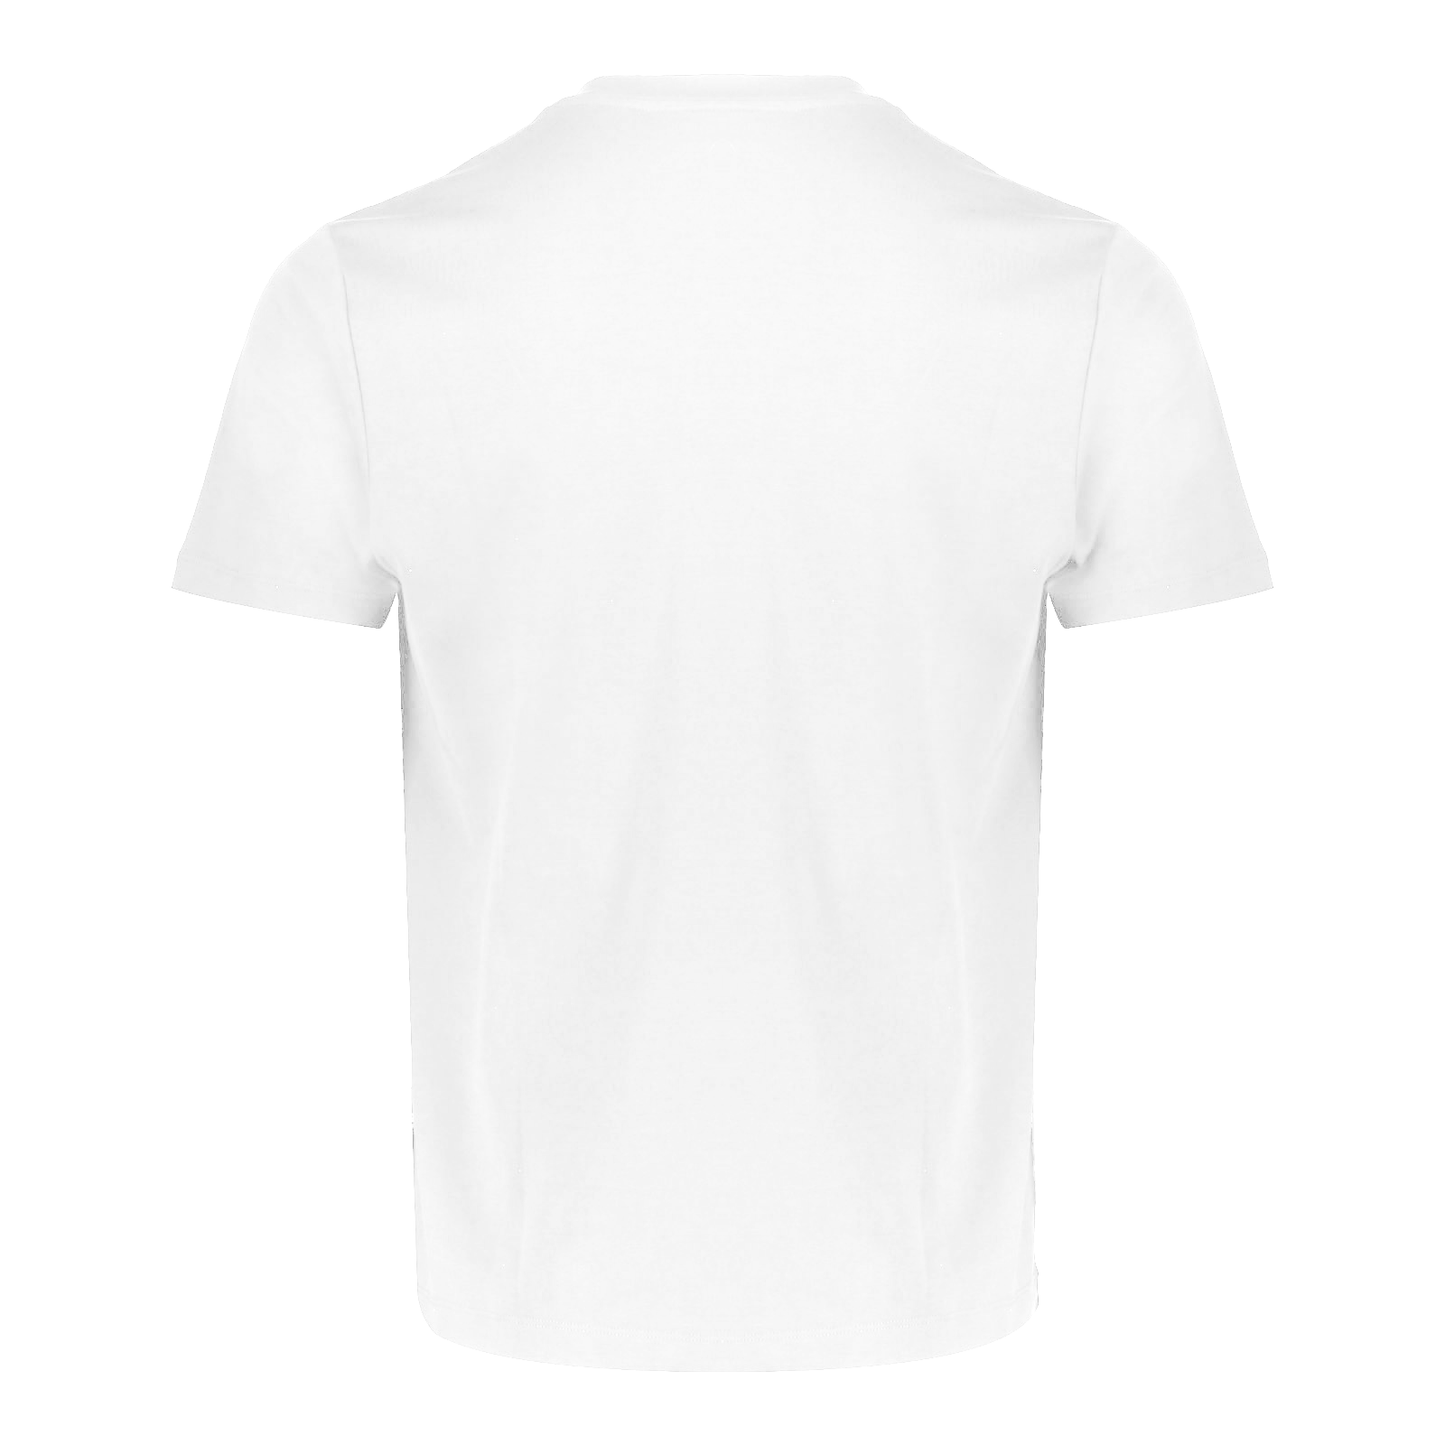 O OO White T-shirt Men - Do Goods® 